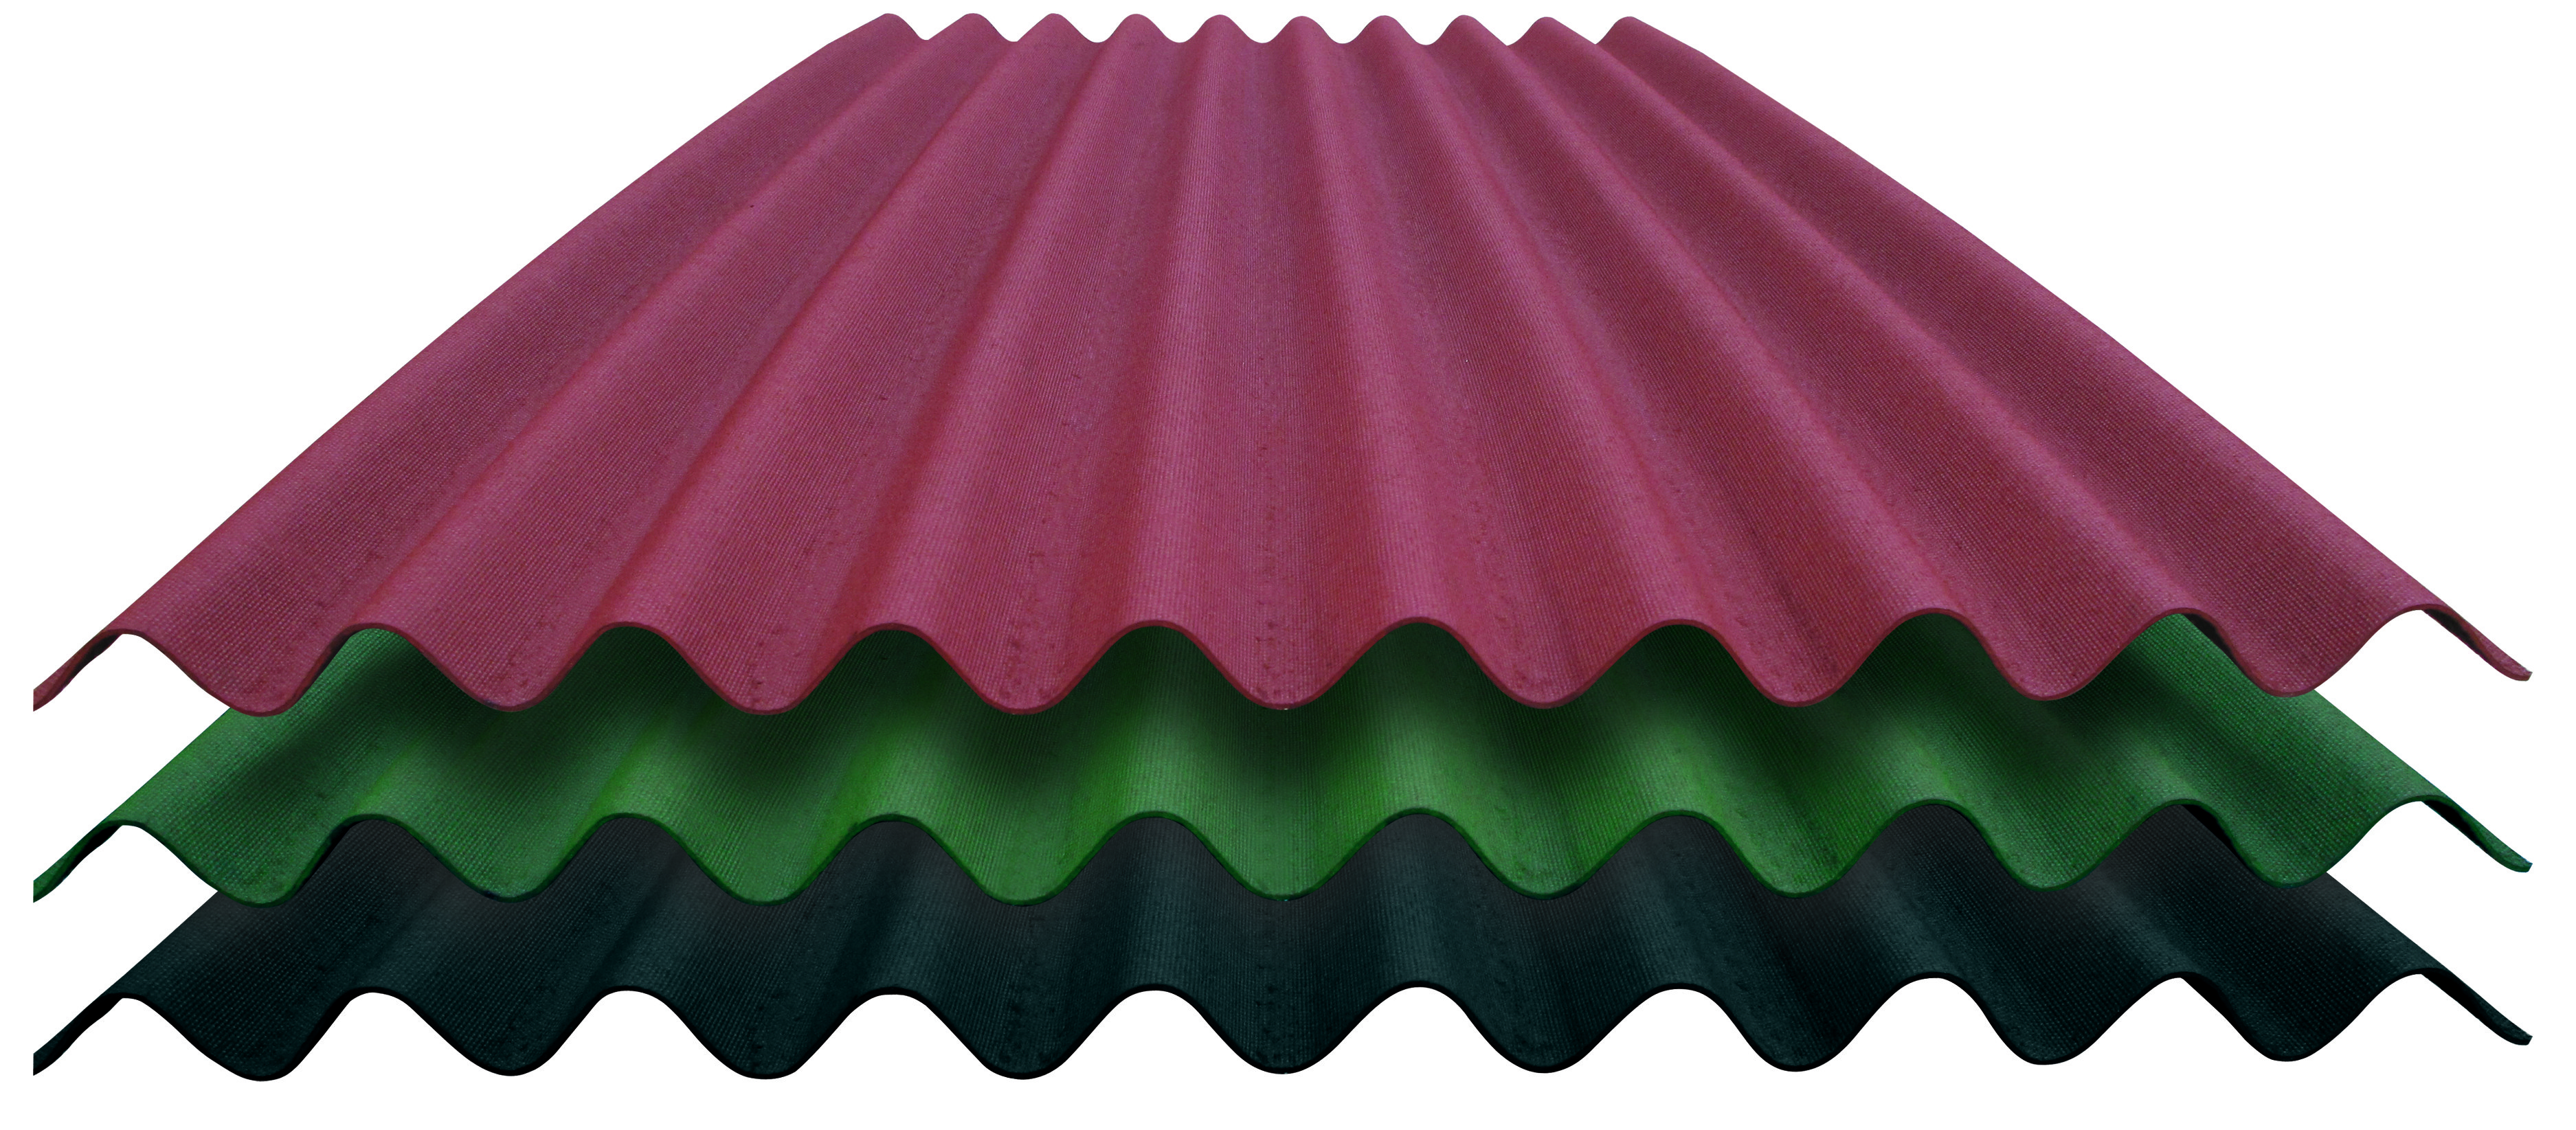 Sistemas impermeabilizantes para tejados y pérgolas de madera